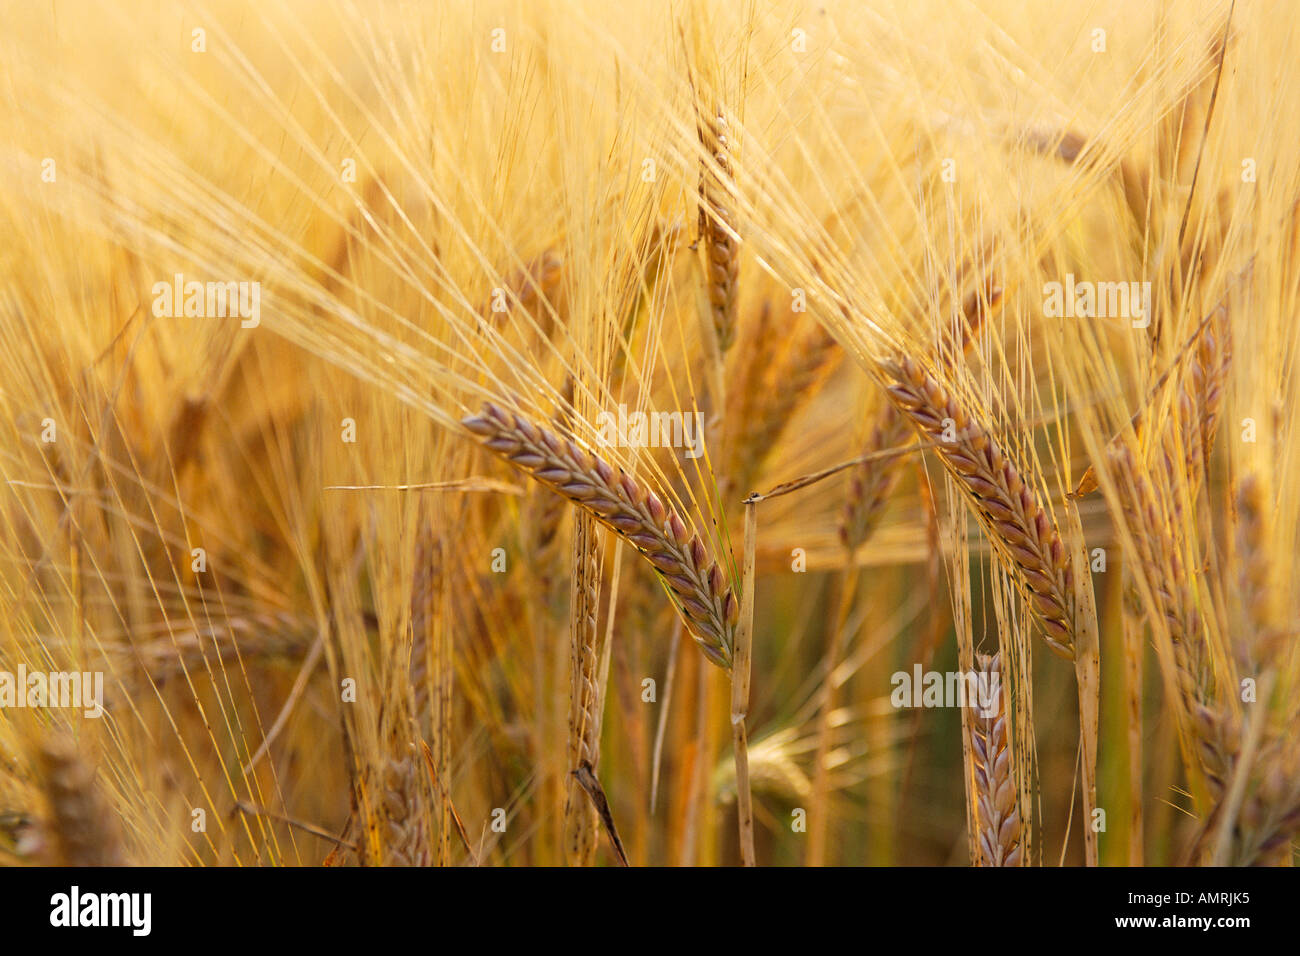 Close-Up of Barley Stock Photo